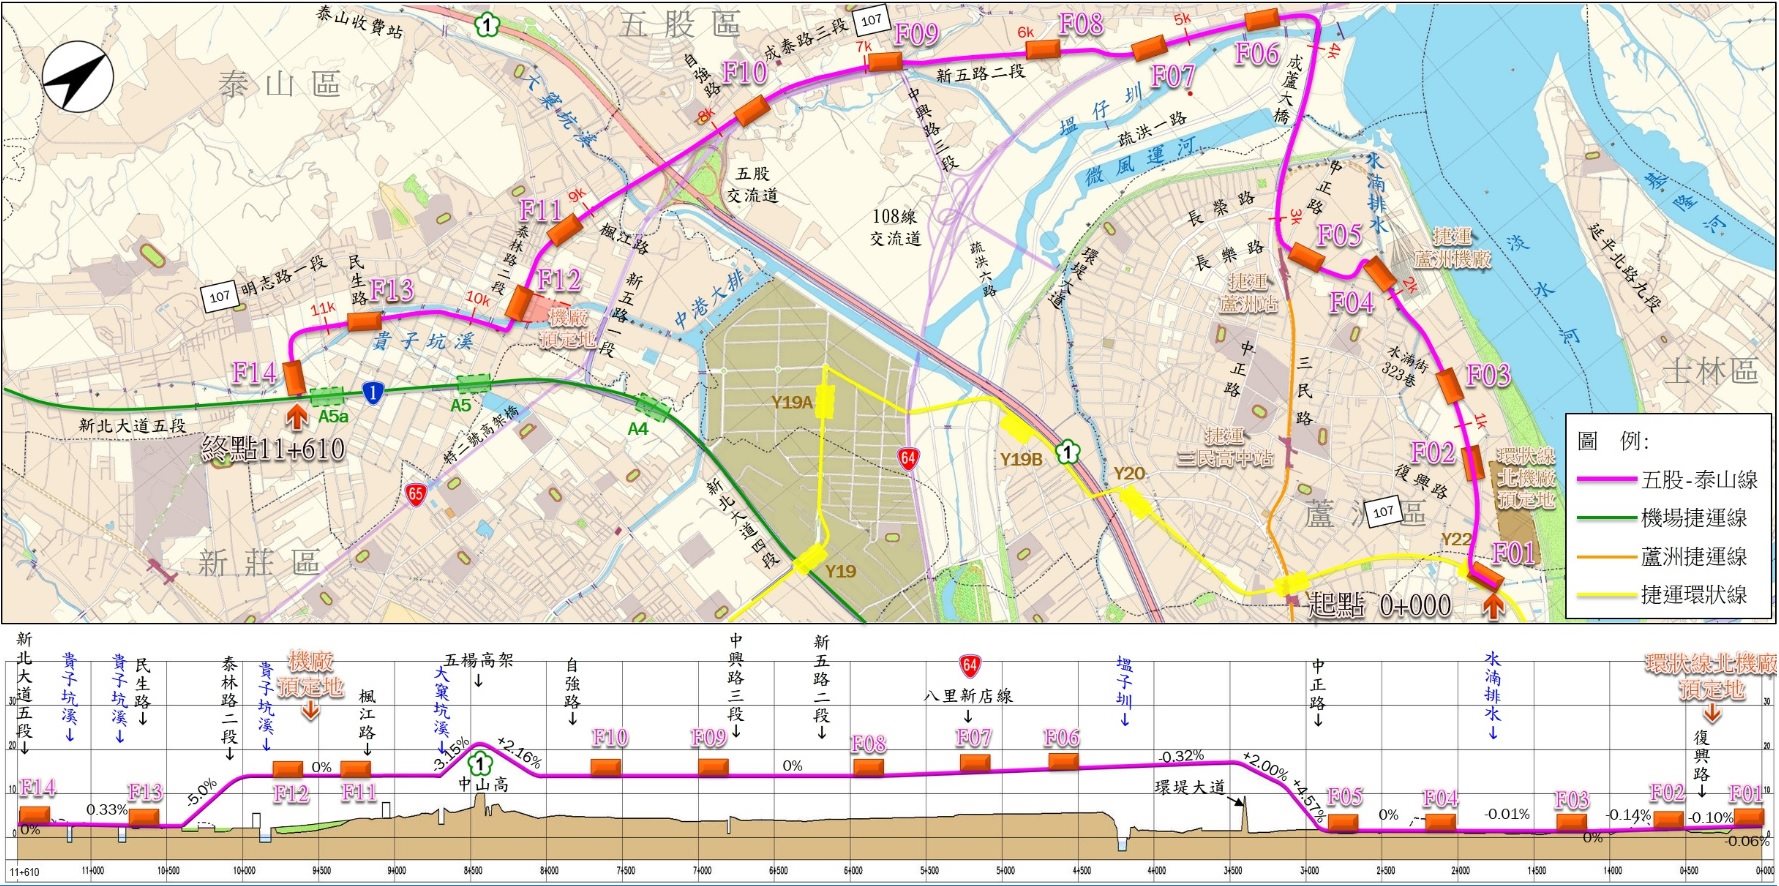 五股泰山輕軌包含平面7座車站，高架7座車站，共設14站及1座機廠。（本計畫尚未核定，相關資料僅供參考）。